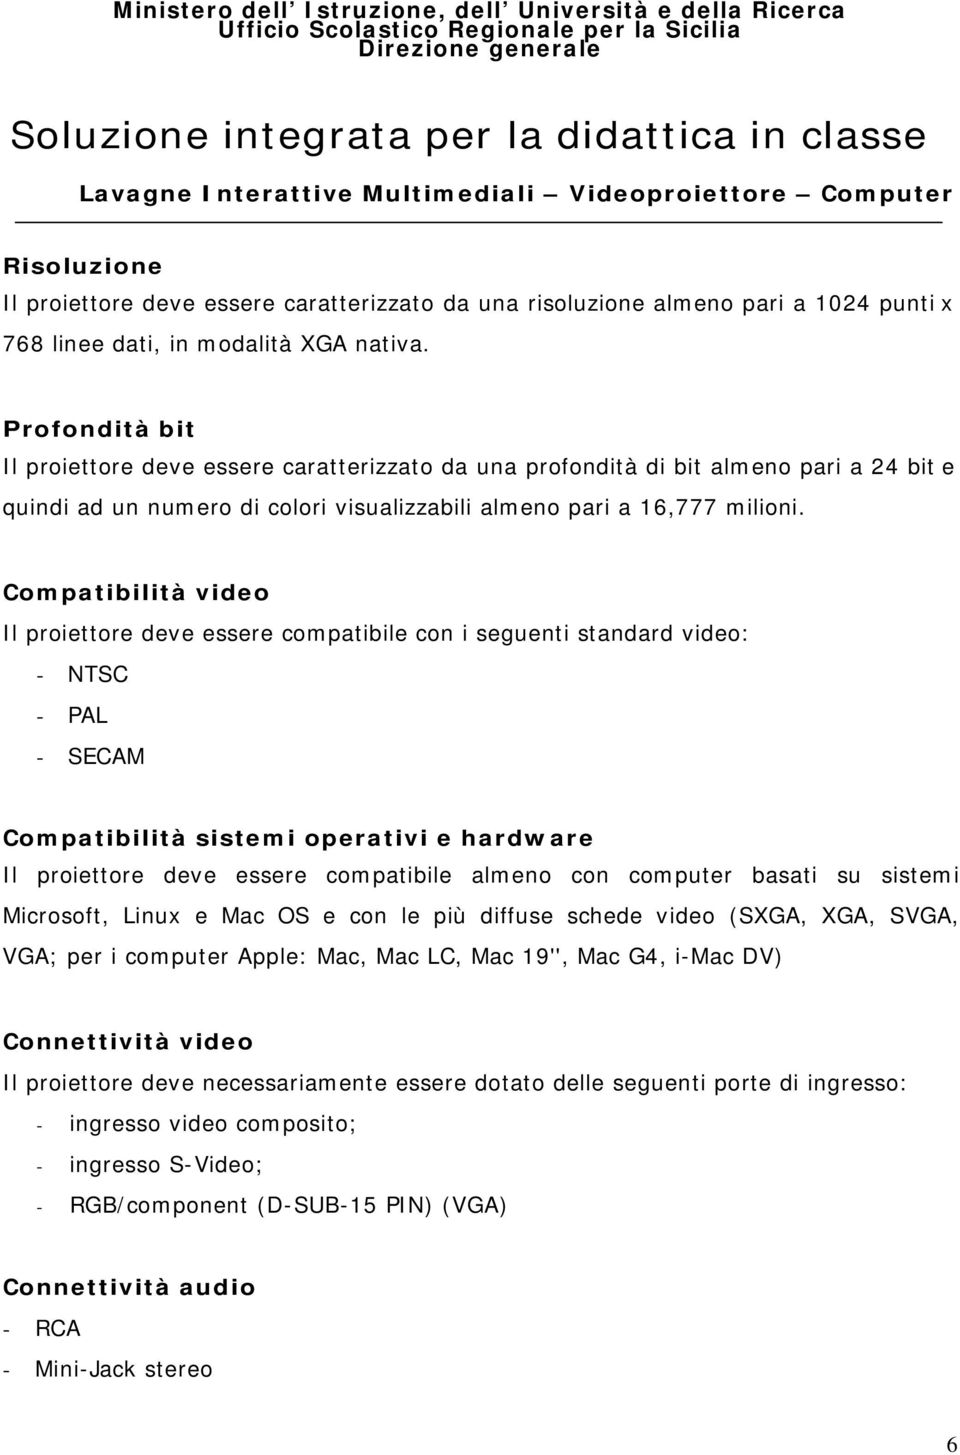 Compatibilità video Il proiettore deve essere compatibile con i seguenti standard video: - NTSC - PAL - SECAM Compatibilità sistemi operativi e hardware Il proiettore deve essere compatibile almeno